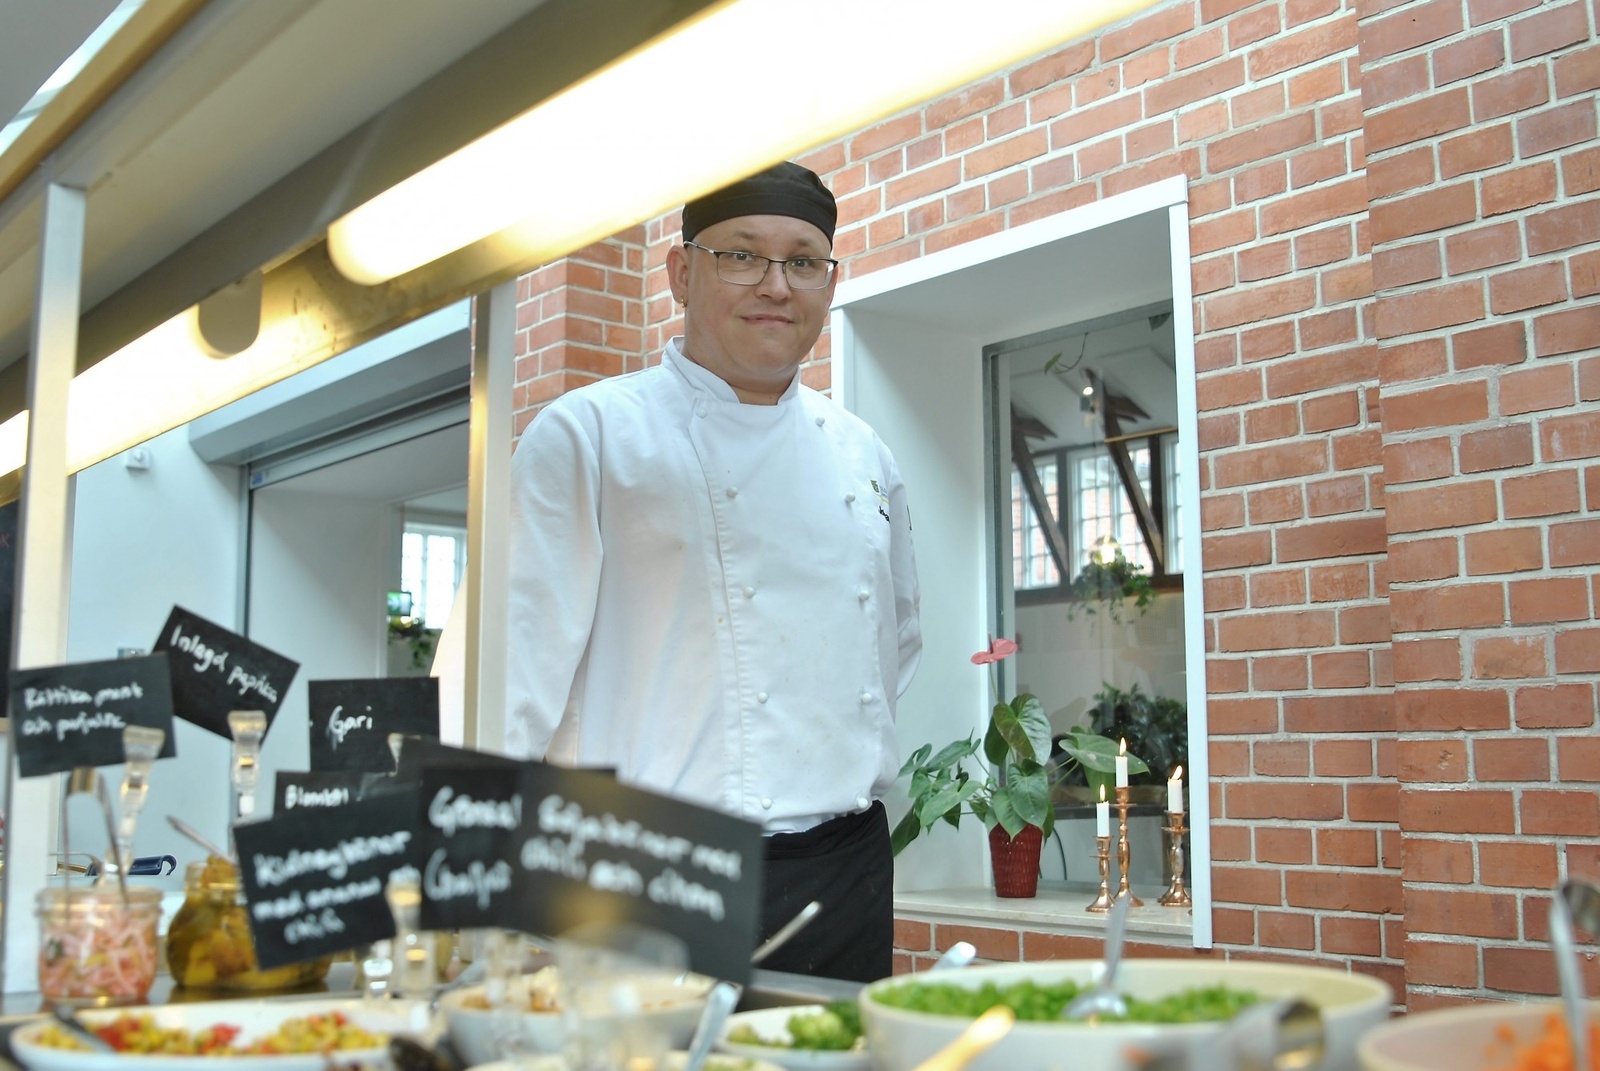 Kökschefen Johan Granström tror att närvaron på skolluncherna är väldigt hög och tycker det är viktigt att de vuxna äter med eleverna. Skolan får inte mer än andra till skolmaten, 10.40-10.50 kr.